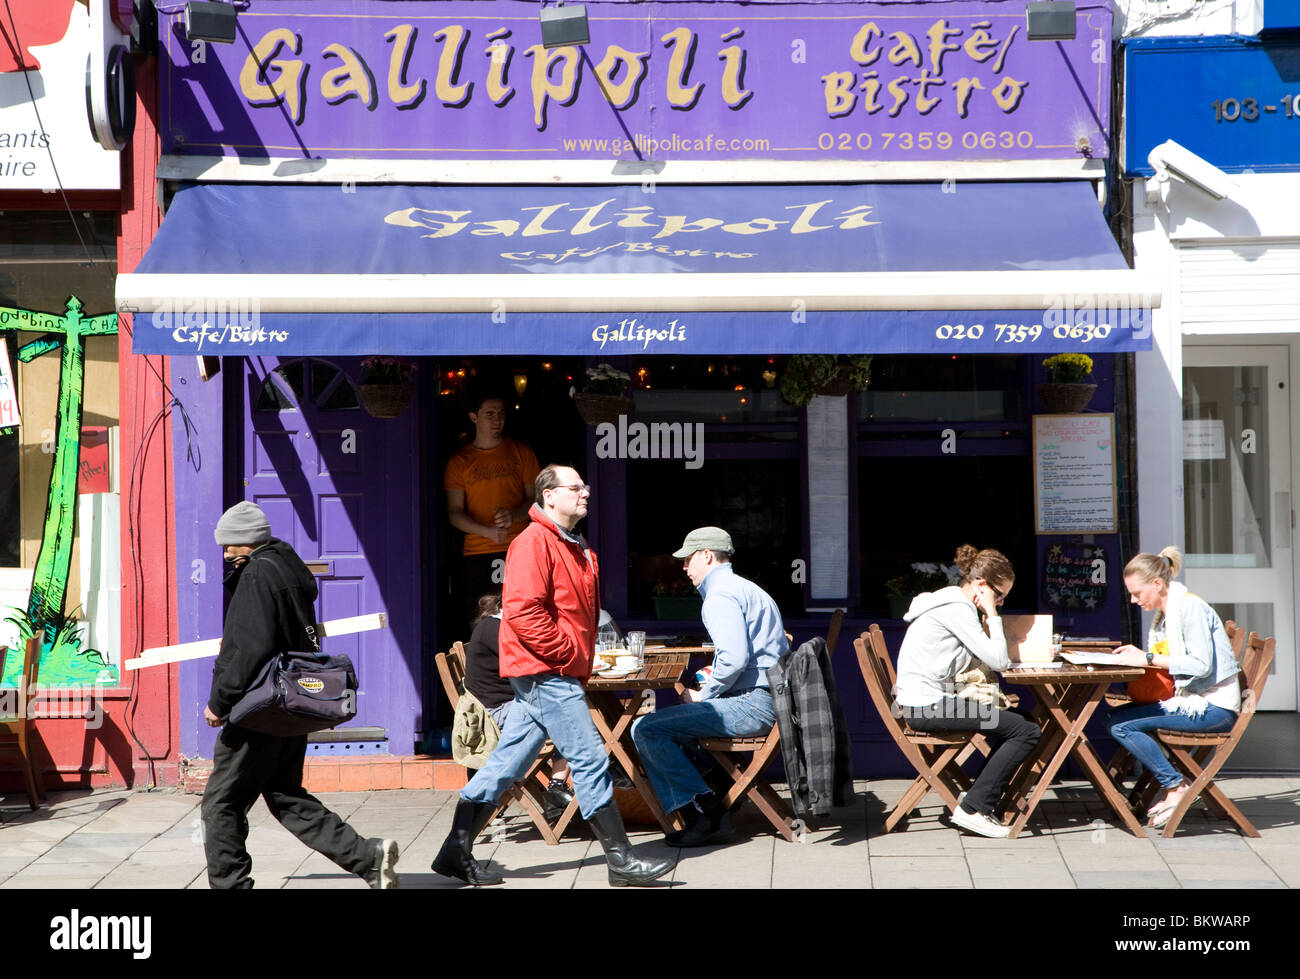 Gallipoli restaurante turco en Upper Street, Islington, Londres Foto de stock